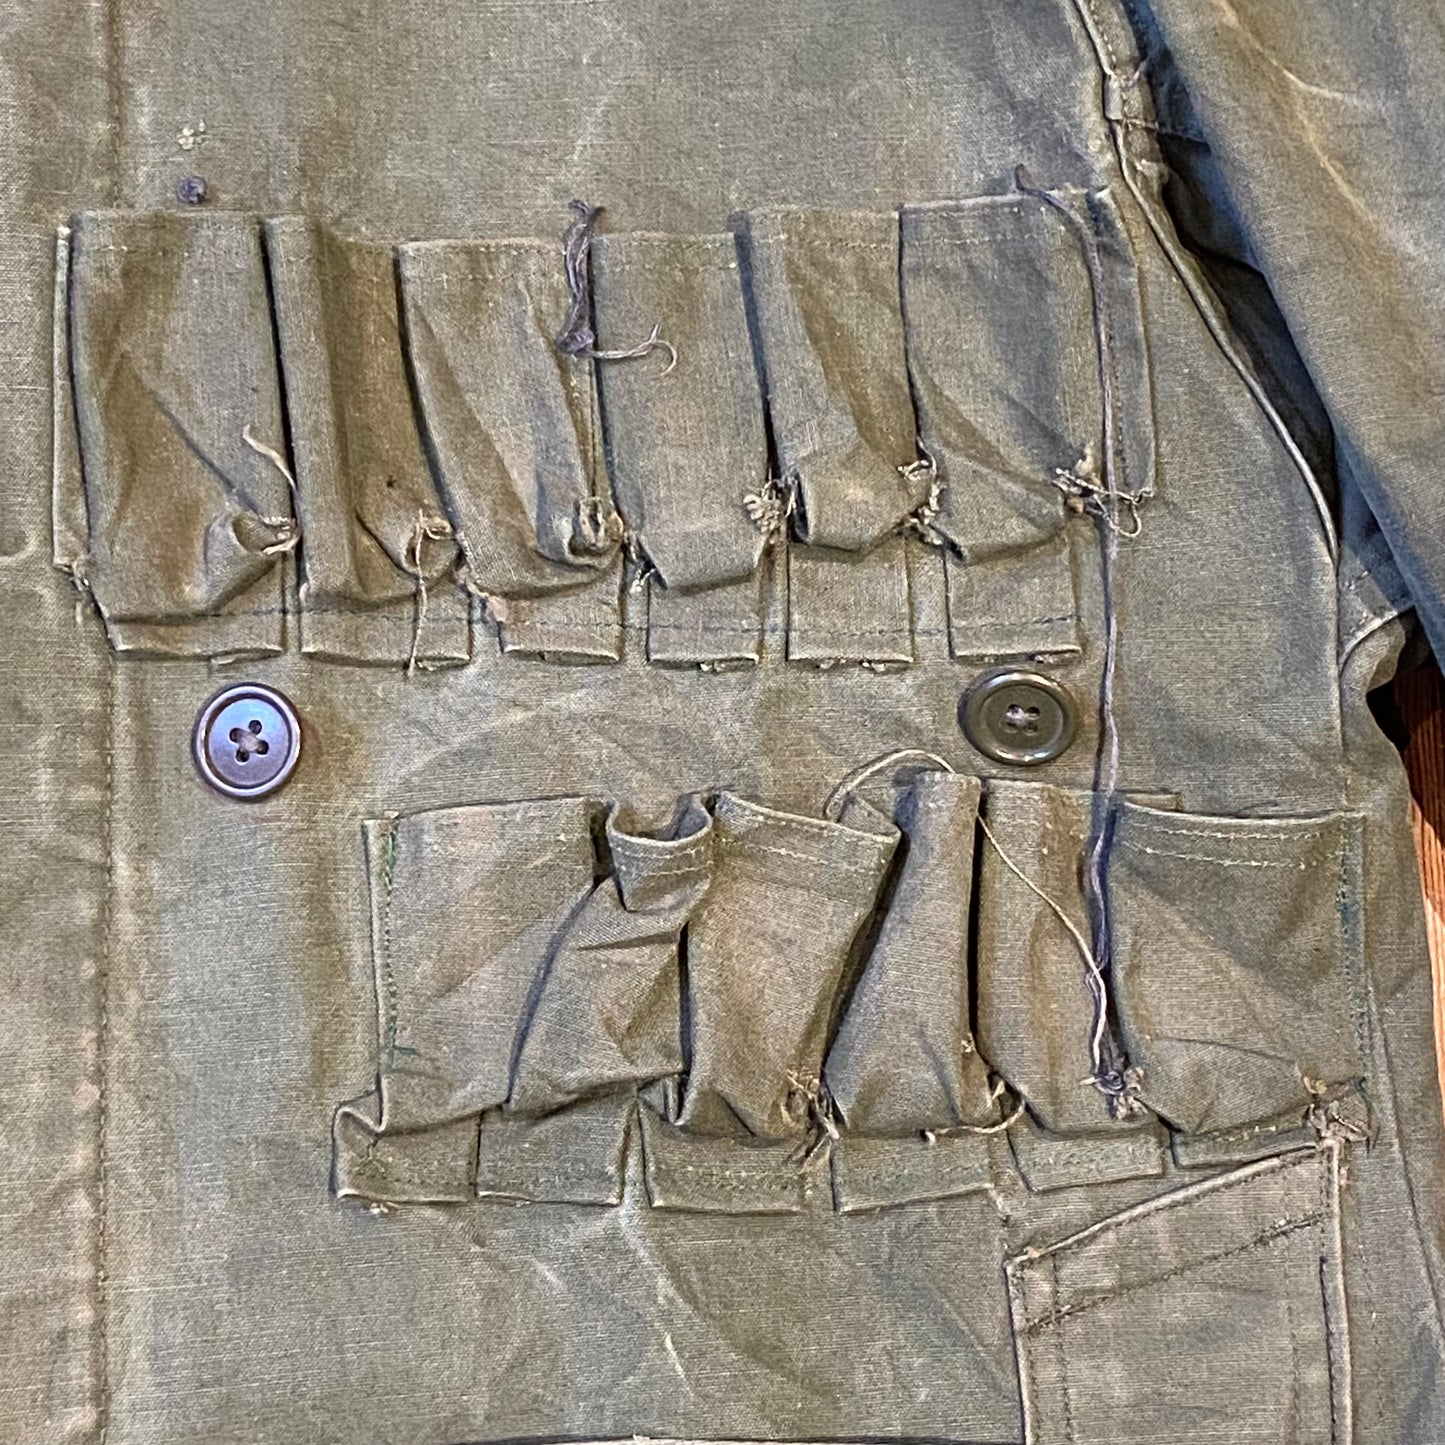 Modified military/hunting jacket medium/ large